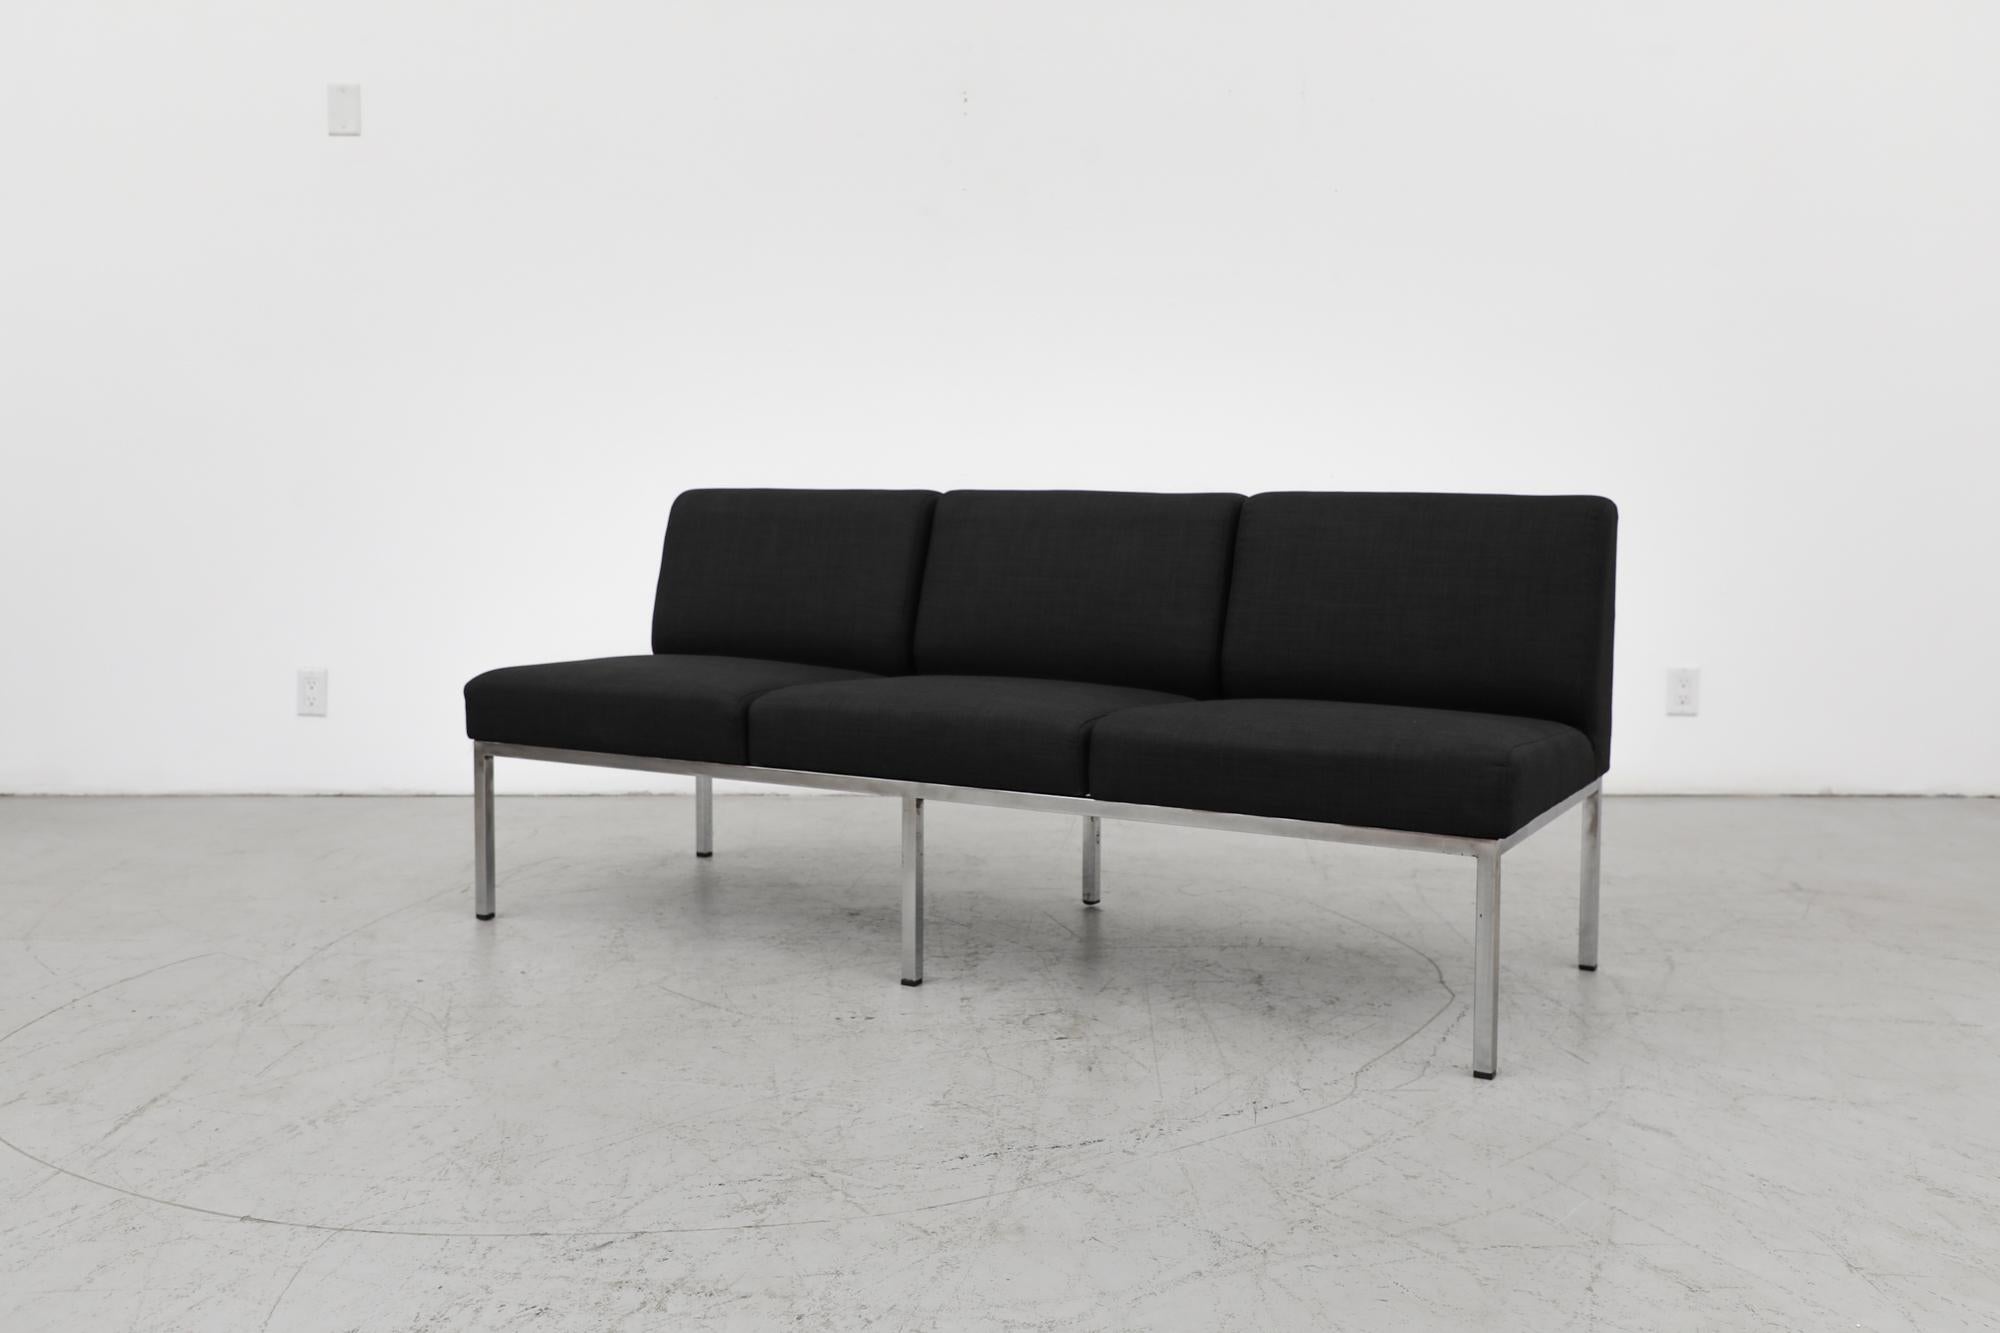 Mid-Century Gelderland 3-Sitzer Sofa mit verchromtem Gestell und neu gepolsterten schwarzen Sitzflächen. Der Rahmen ist im Originalzustand mit sichtbaren Abnutzungserscheinungen und einigen Chromlöchern, die dem Alter und dem Gebrauch entsprechen.